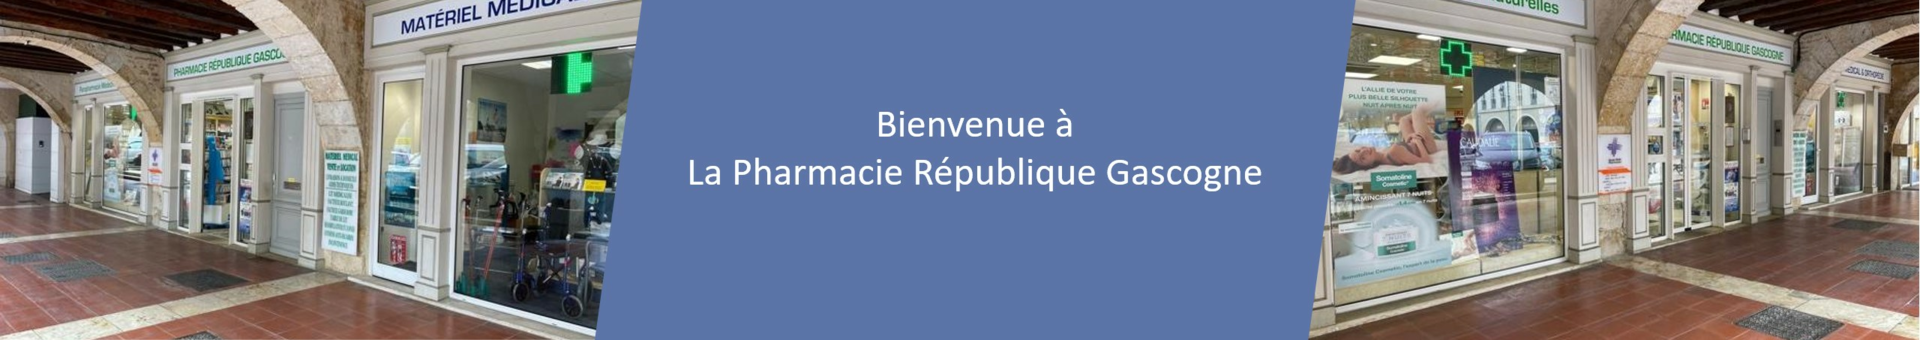 Pharmacie République Gascogne,Fleurance